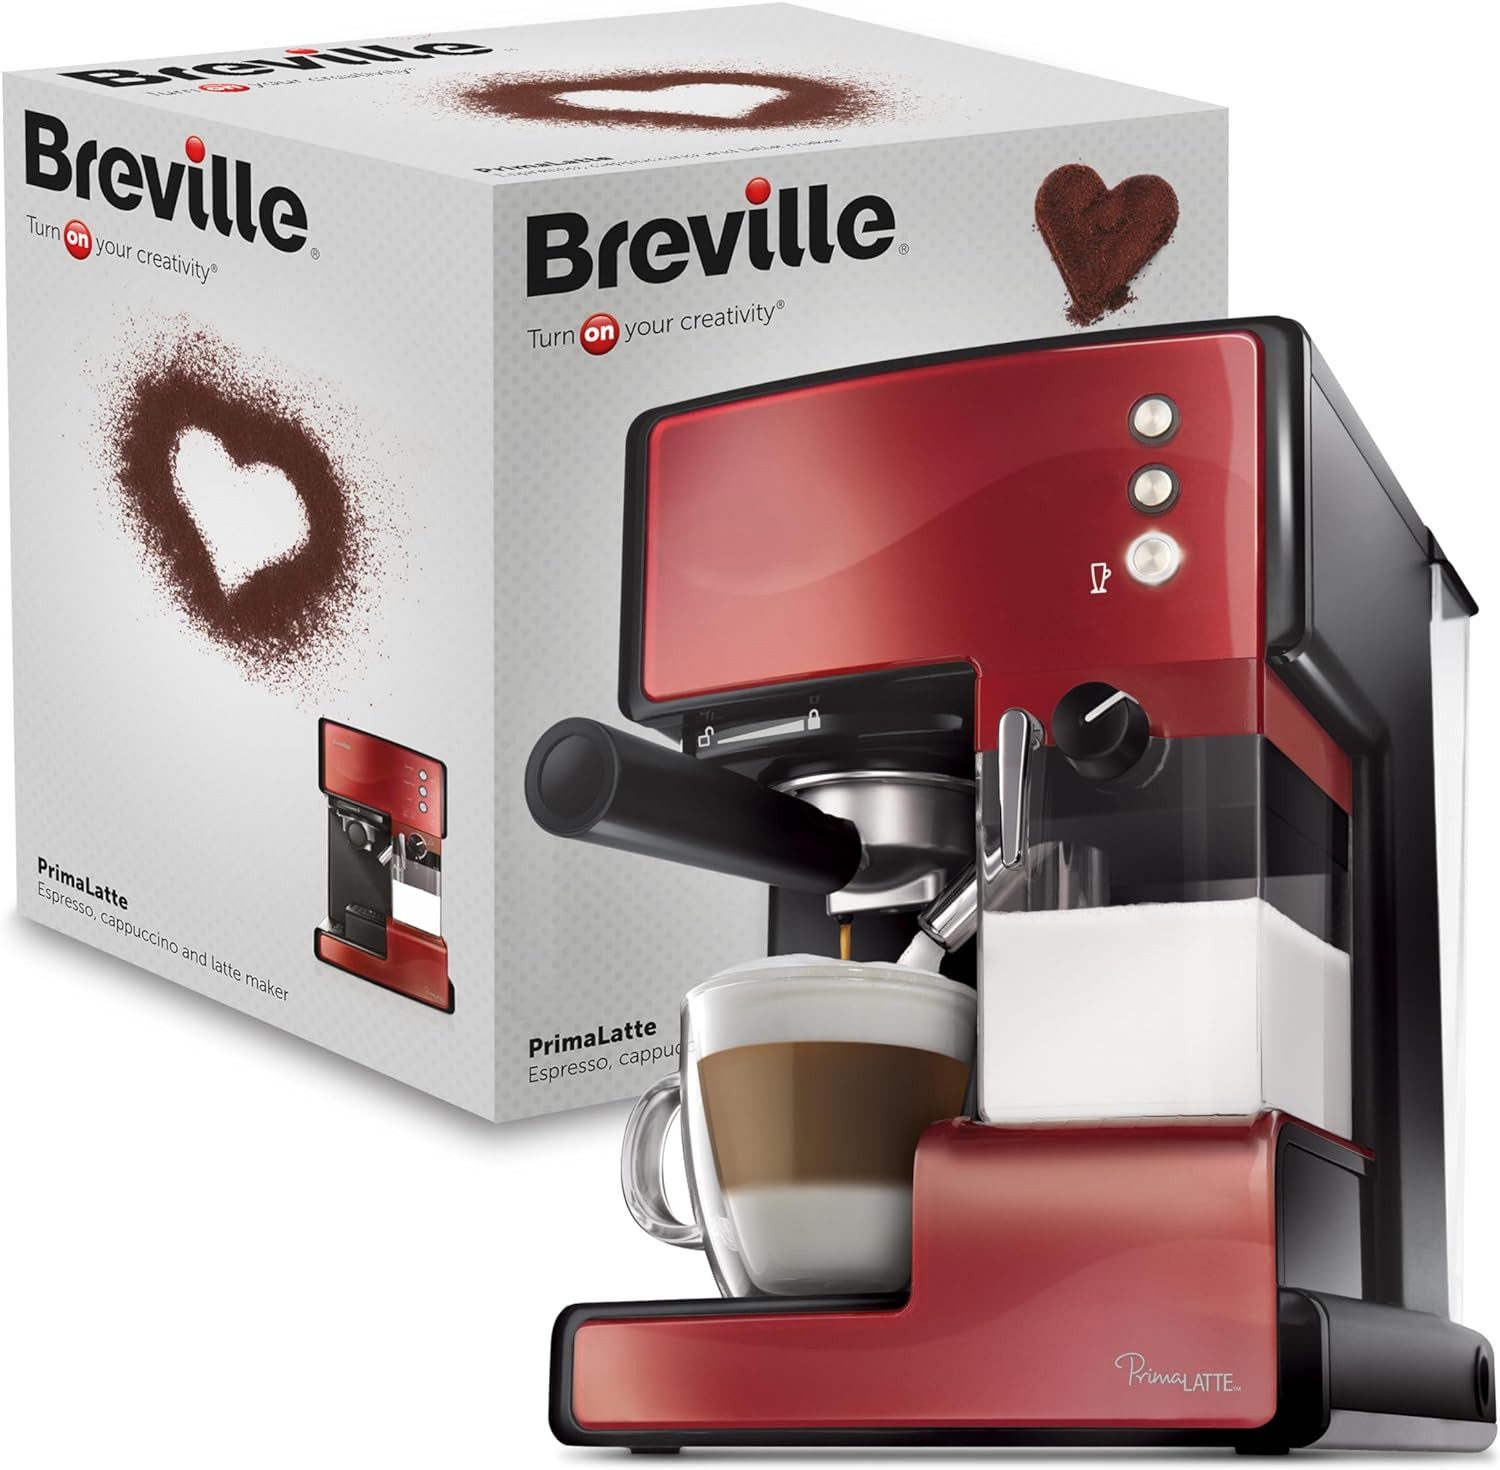 Breville Kaffeevollautomat PrimaLatte Kaffee- und Espressomaschine italienische Pumpe mit 15 Bar, oder Pads geeignet, Integrierter automatischer Milchschäumer